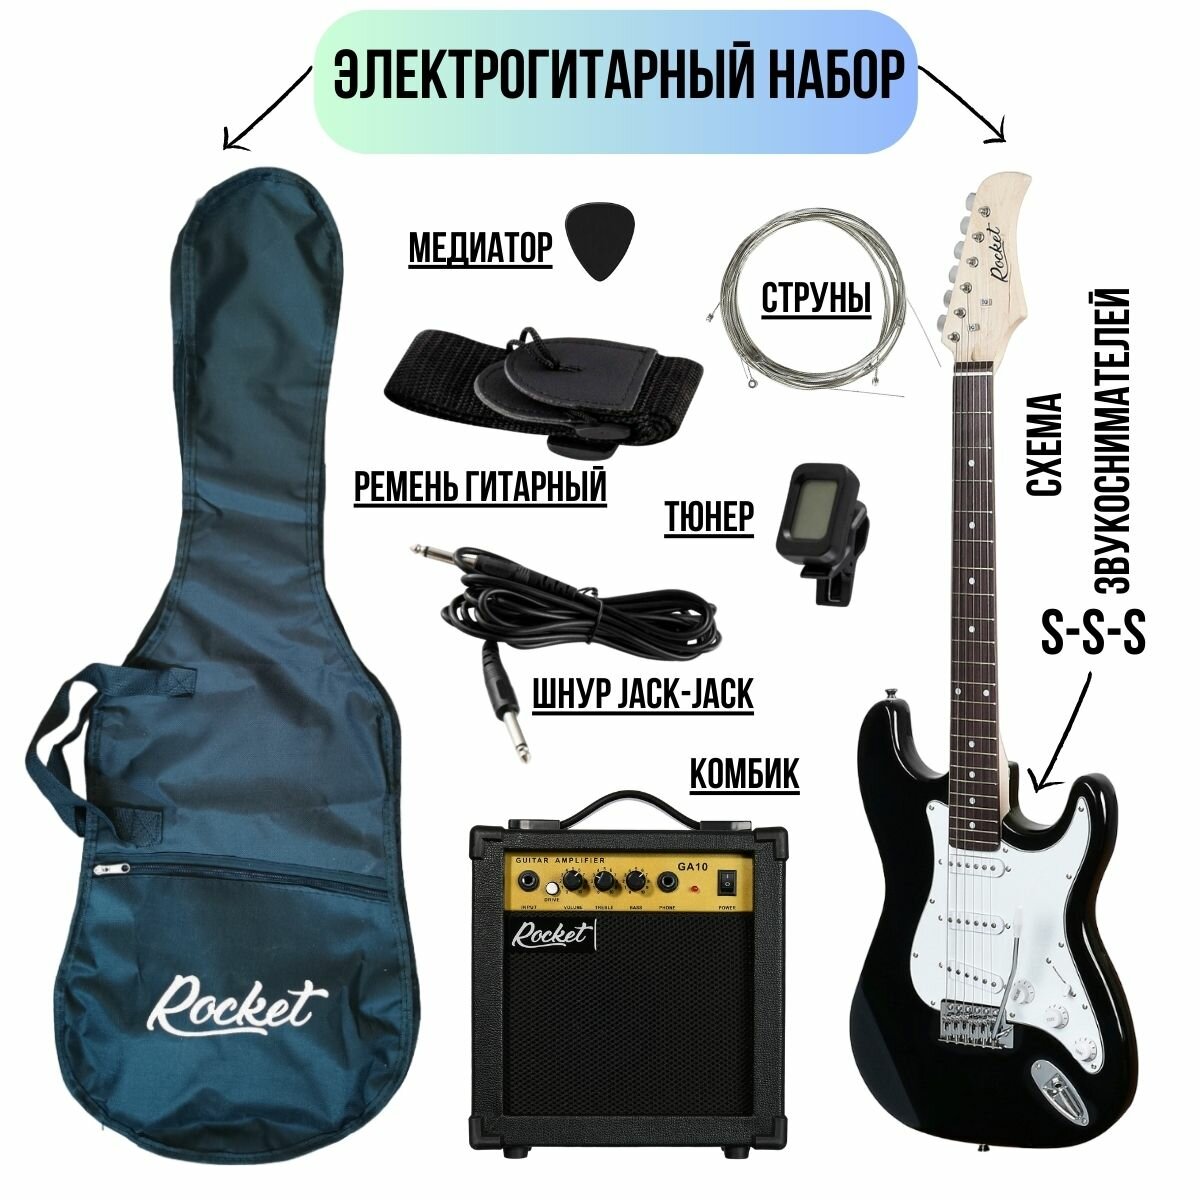 Электрогитарный набор ROCKET PACK-1 BK комплект с электрогитарой Stratocaster черный цвет и аксессуары